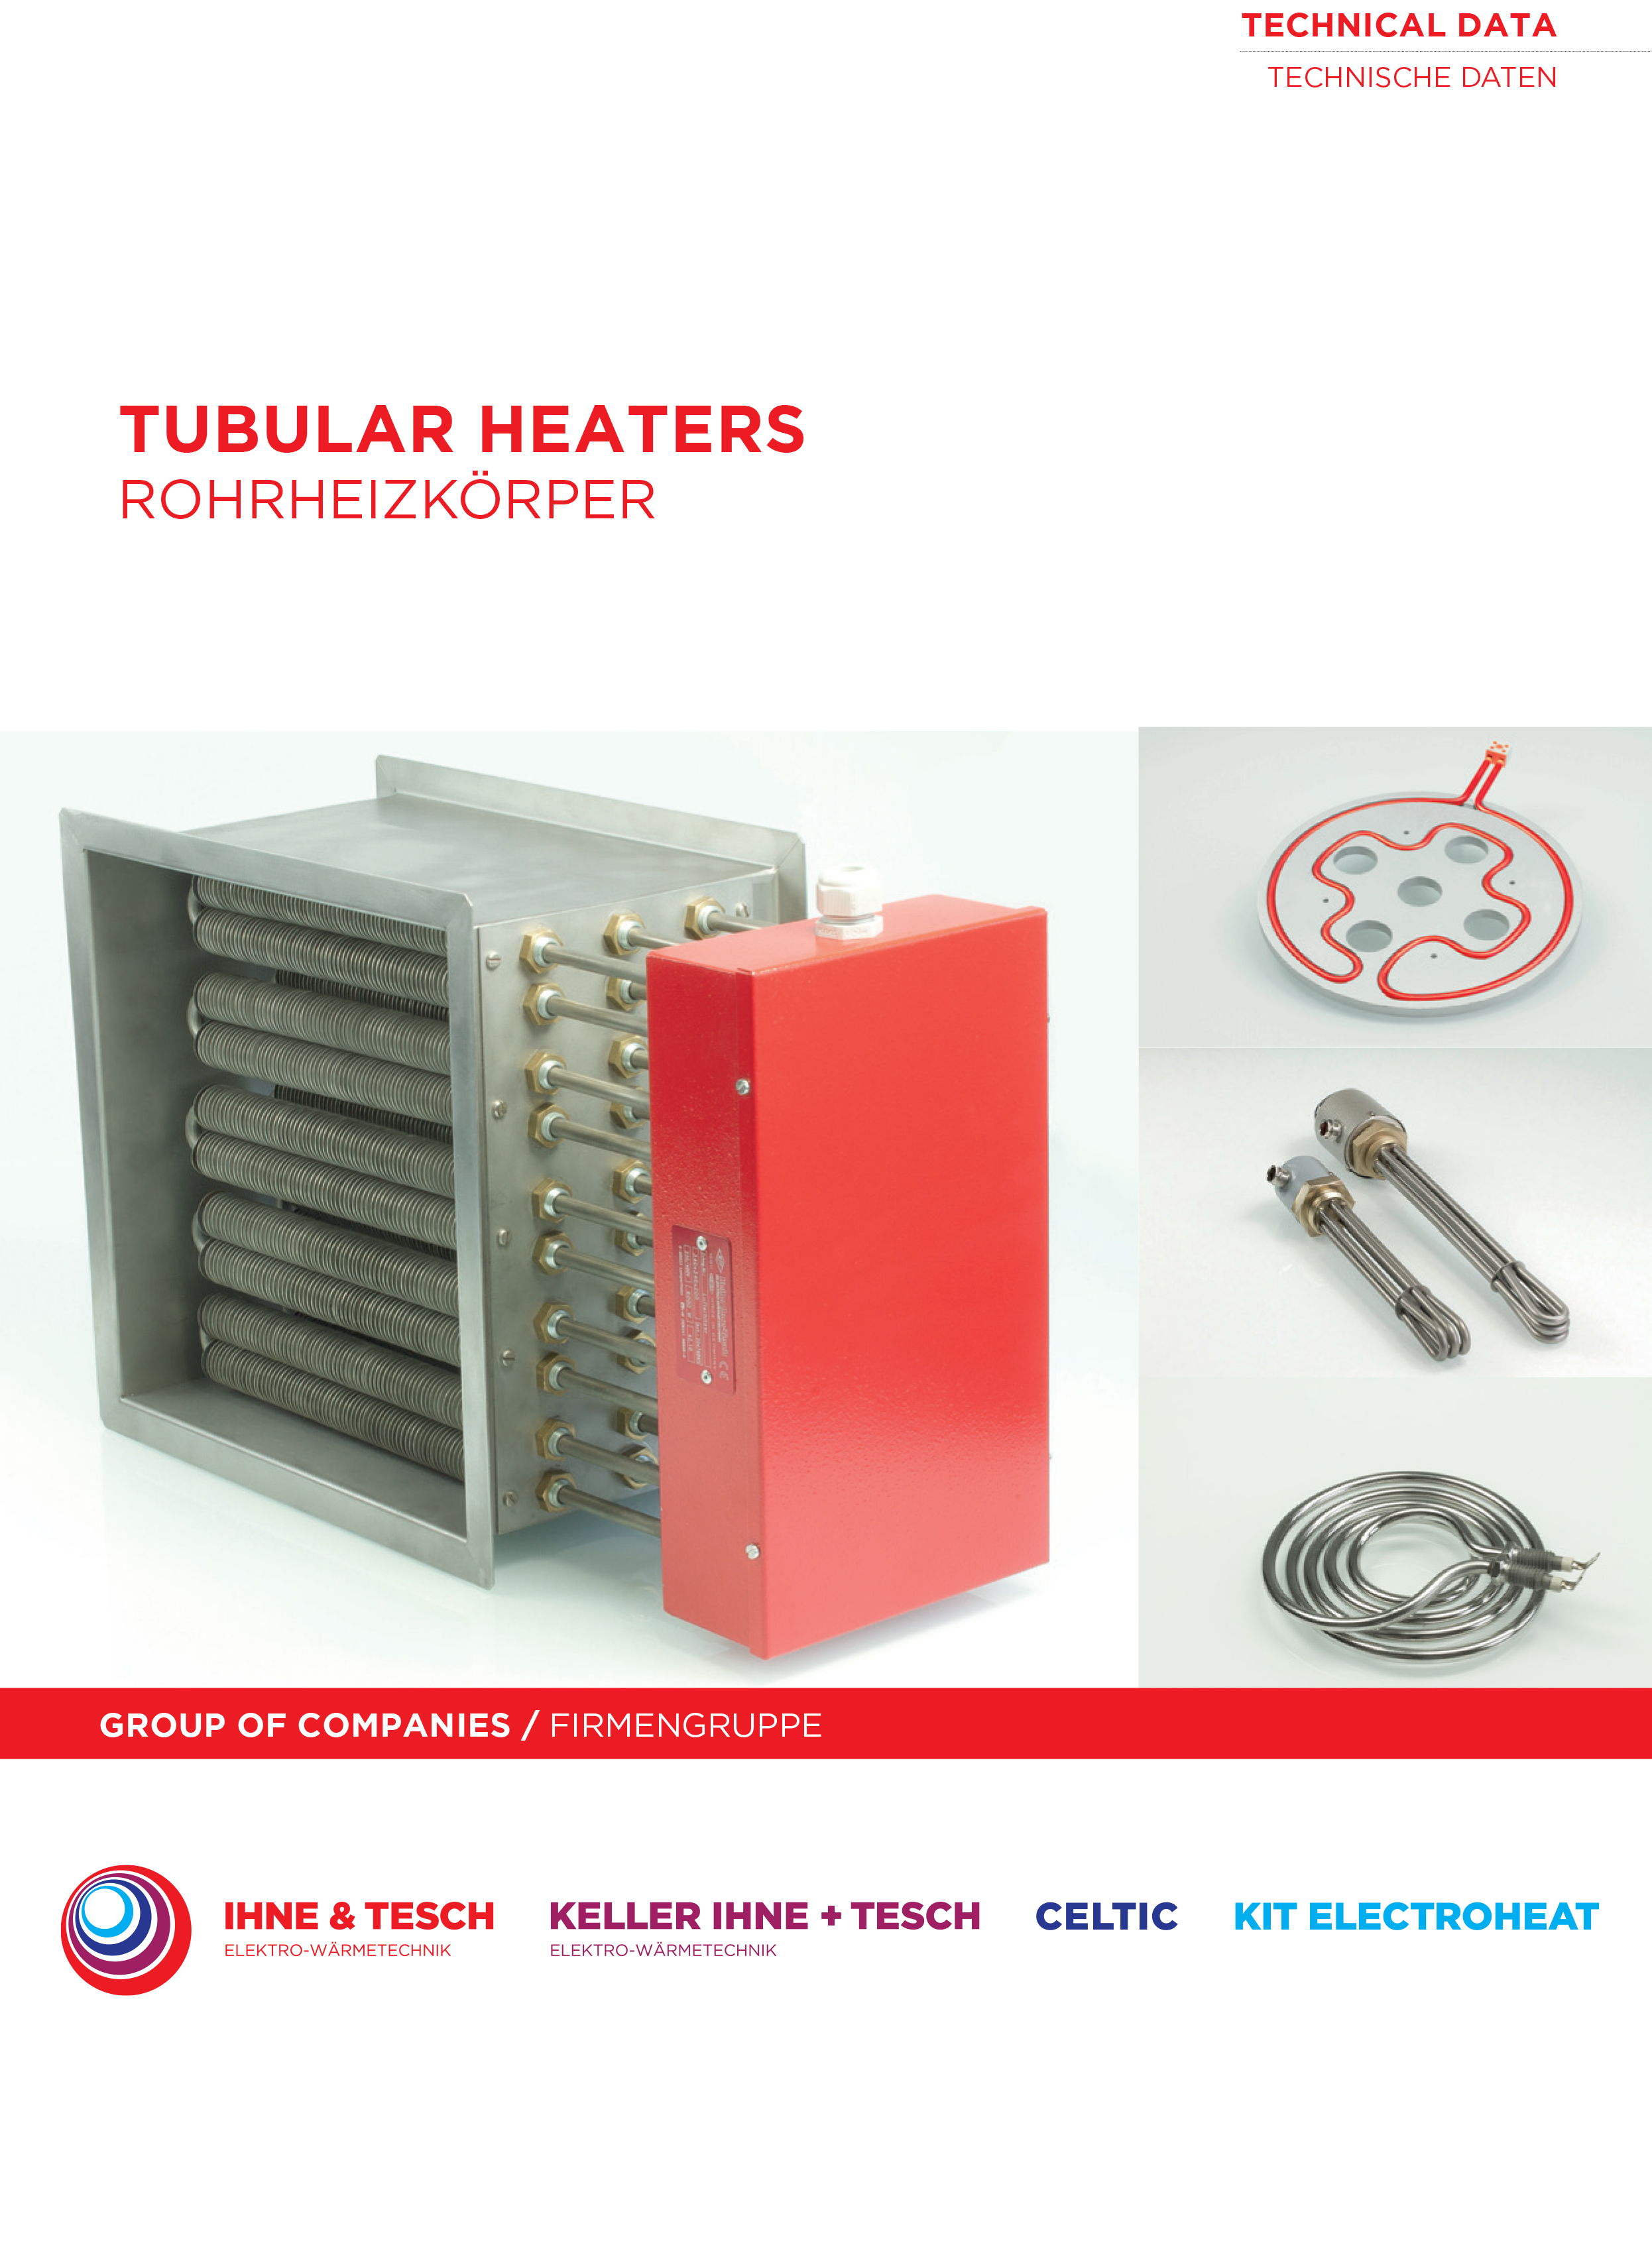 Tubular-Heaters-Technical-Data